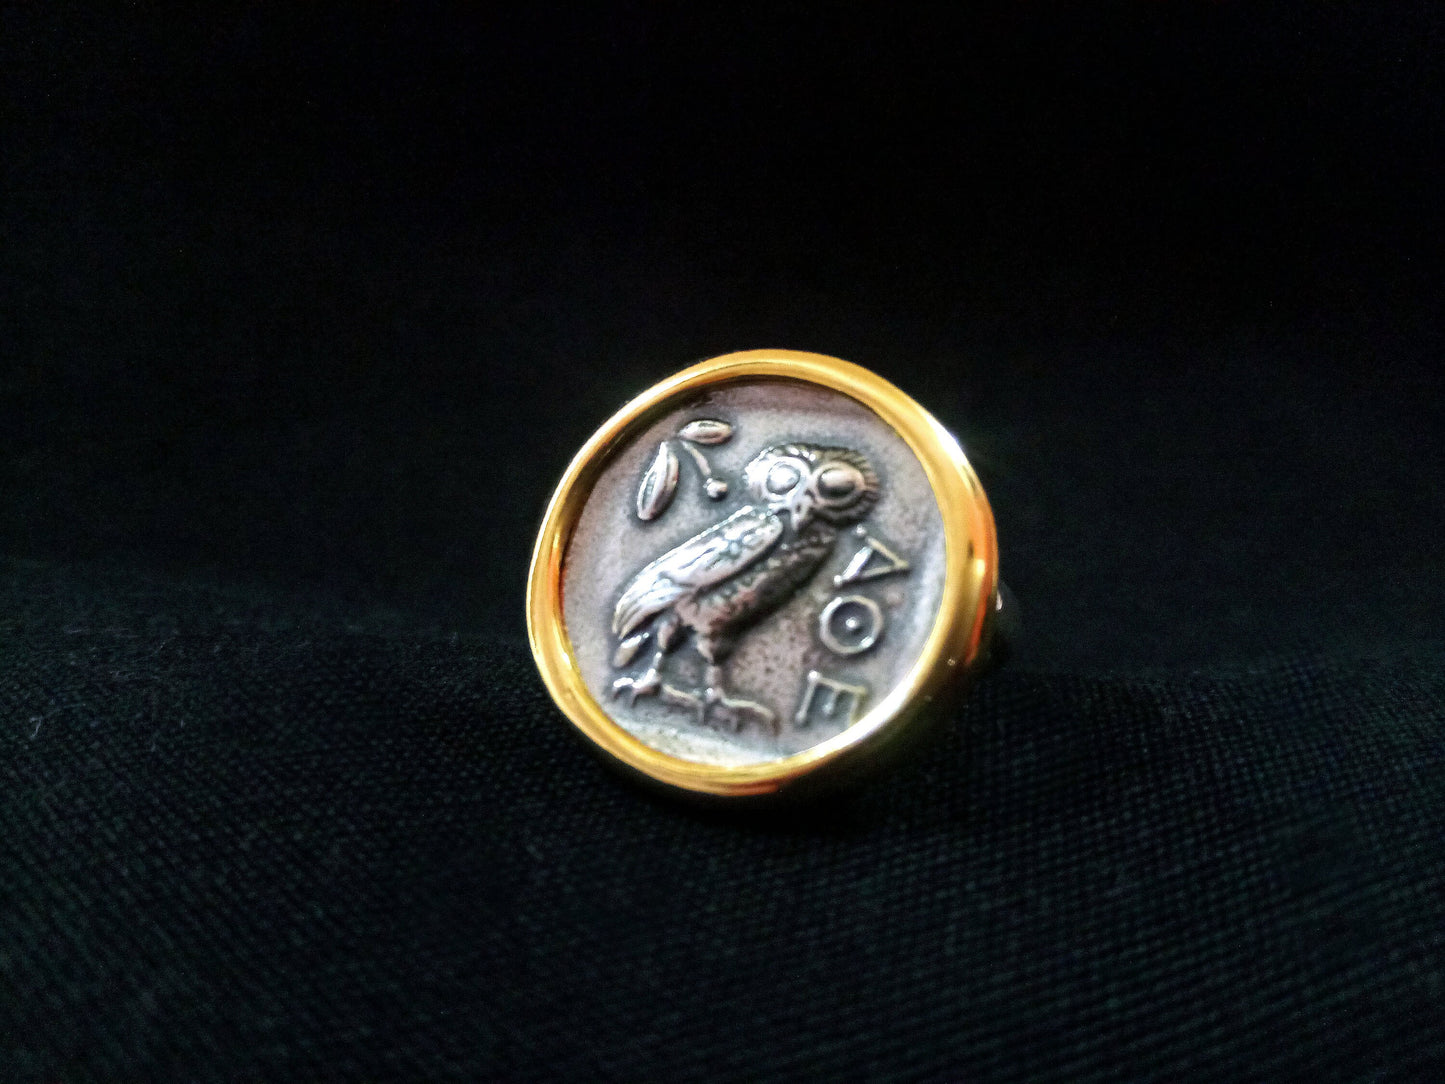 Sterling Silber 925 antike griechische Eule vergoldet Münzring 21mm, griechische Eule Silberring, griechischer Silber Goldring, Bijoux Grecque Grece